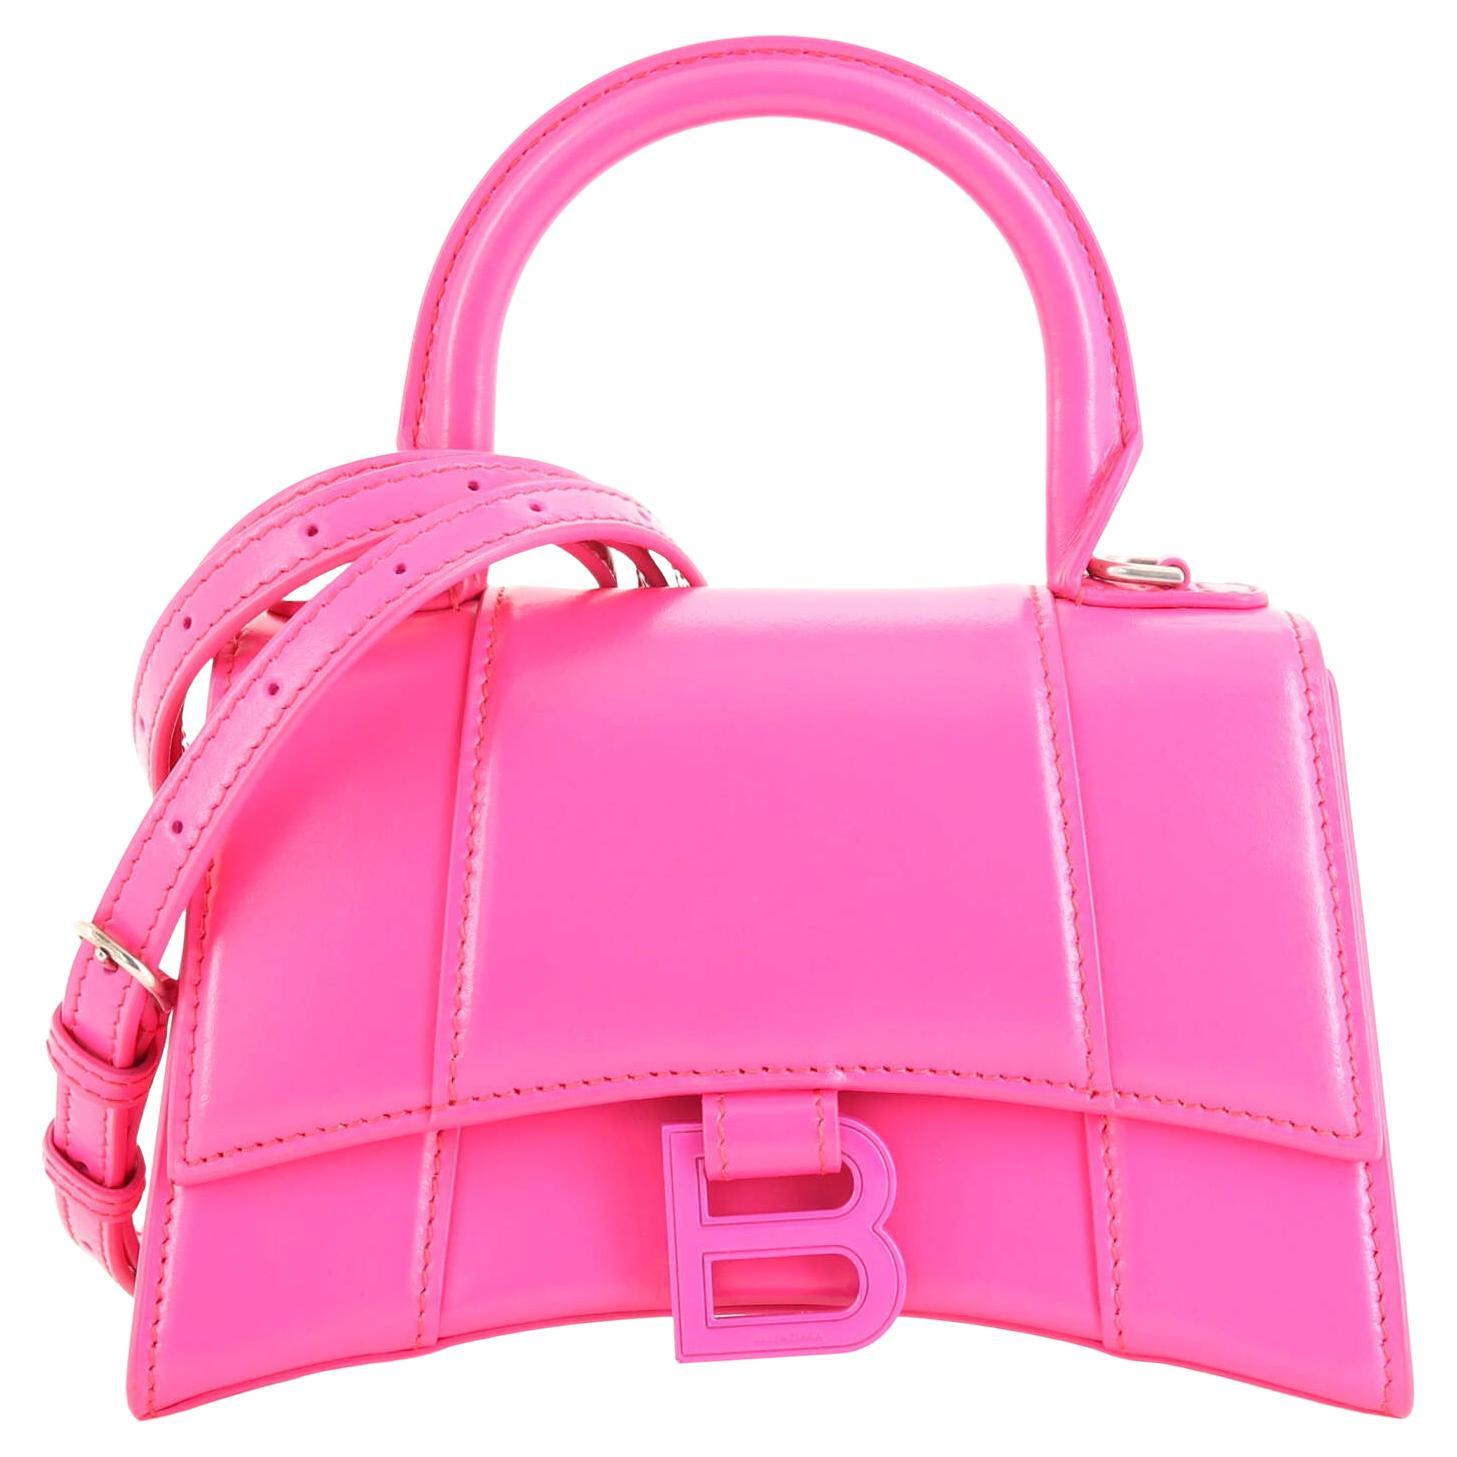 Balenciaga Bag Hourglass Pink - 3 For Sale on 1stDibs